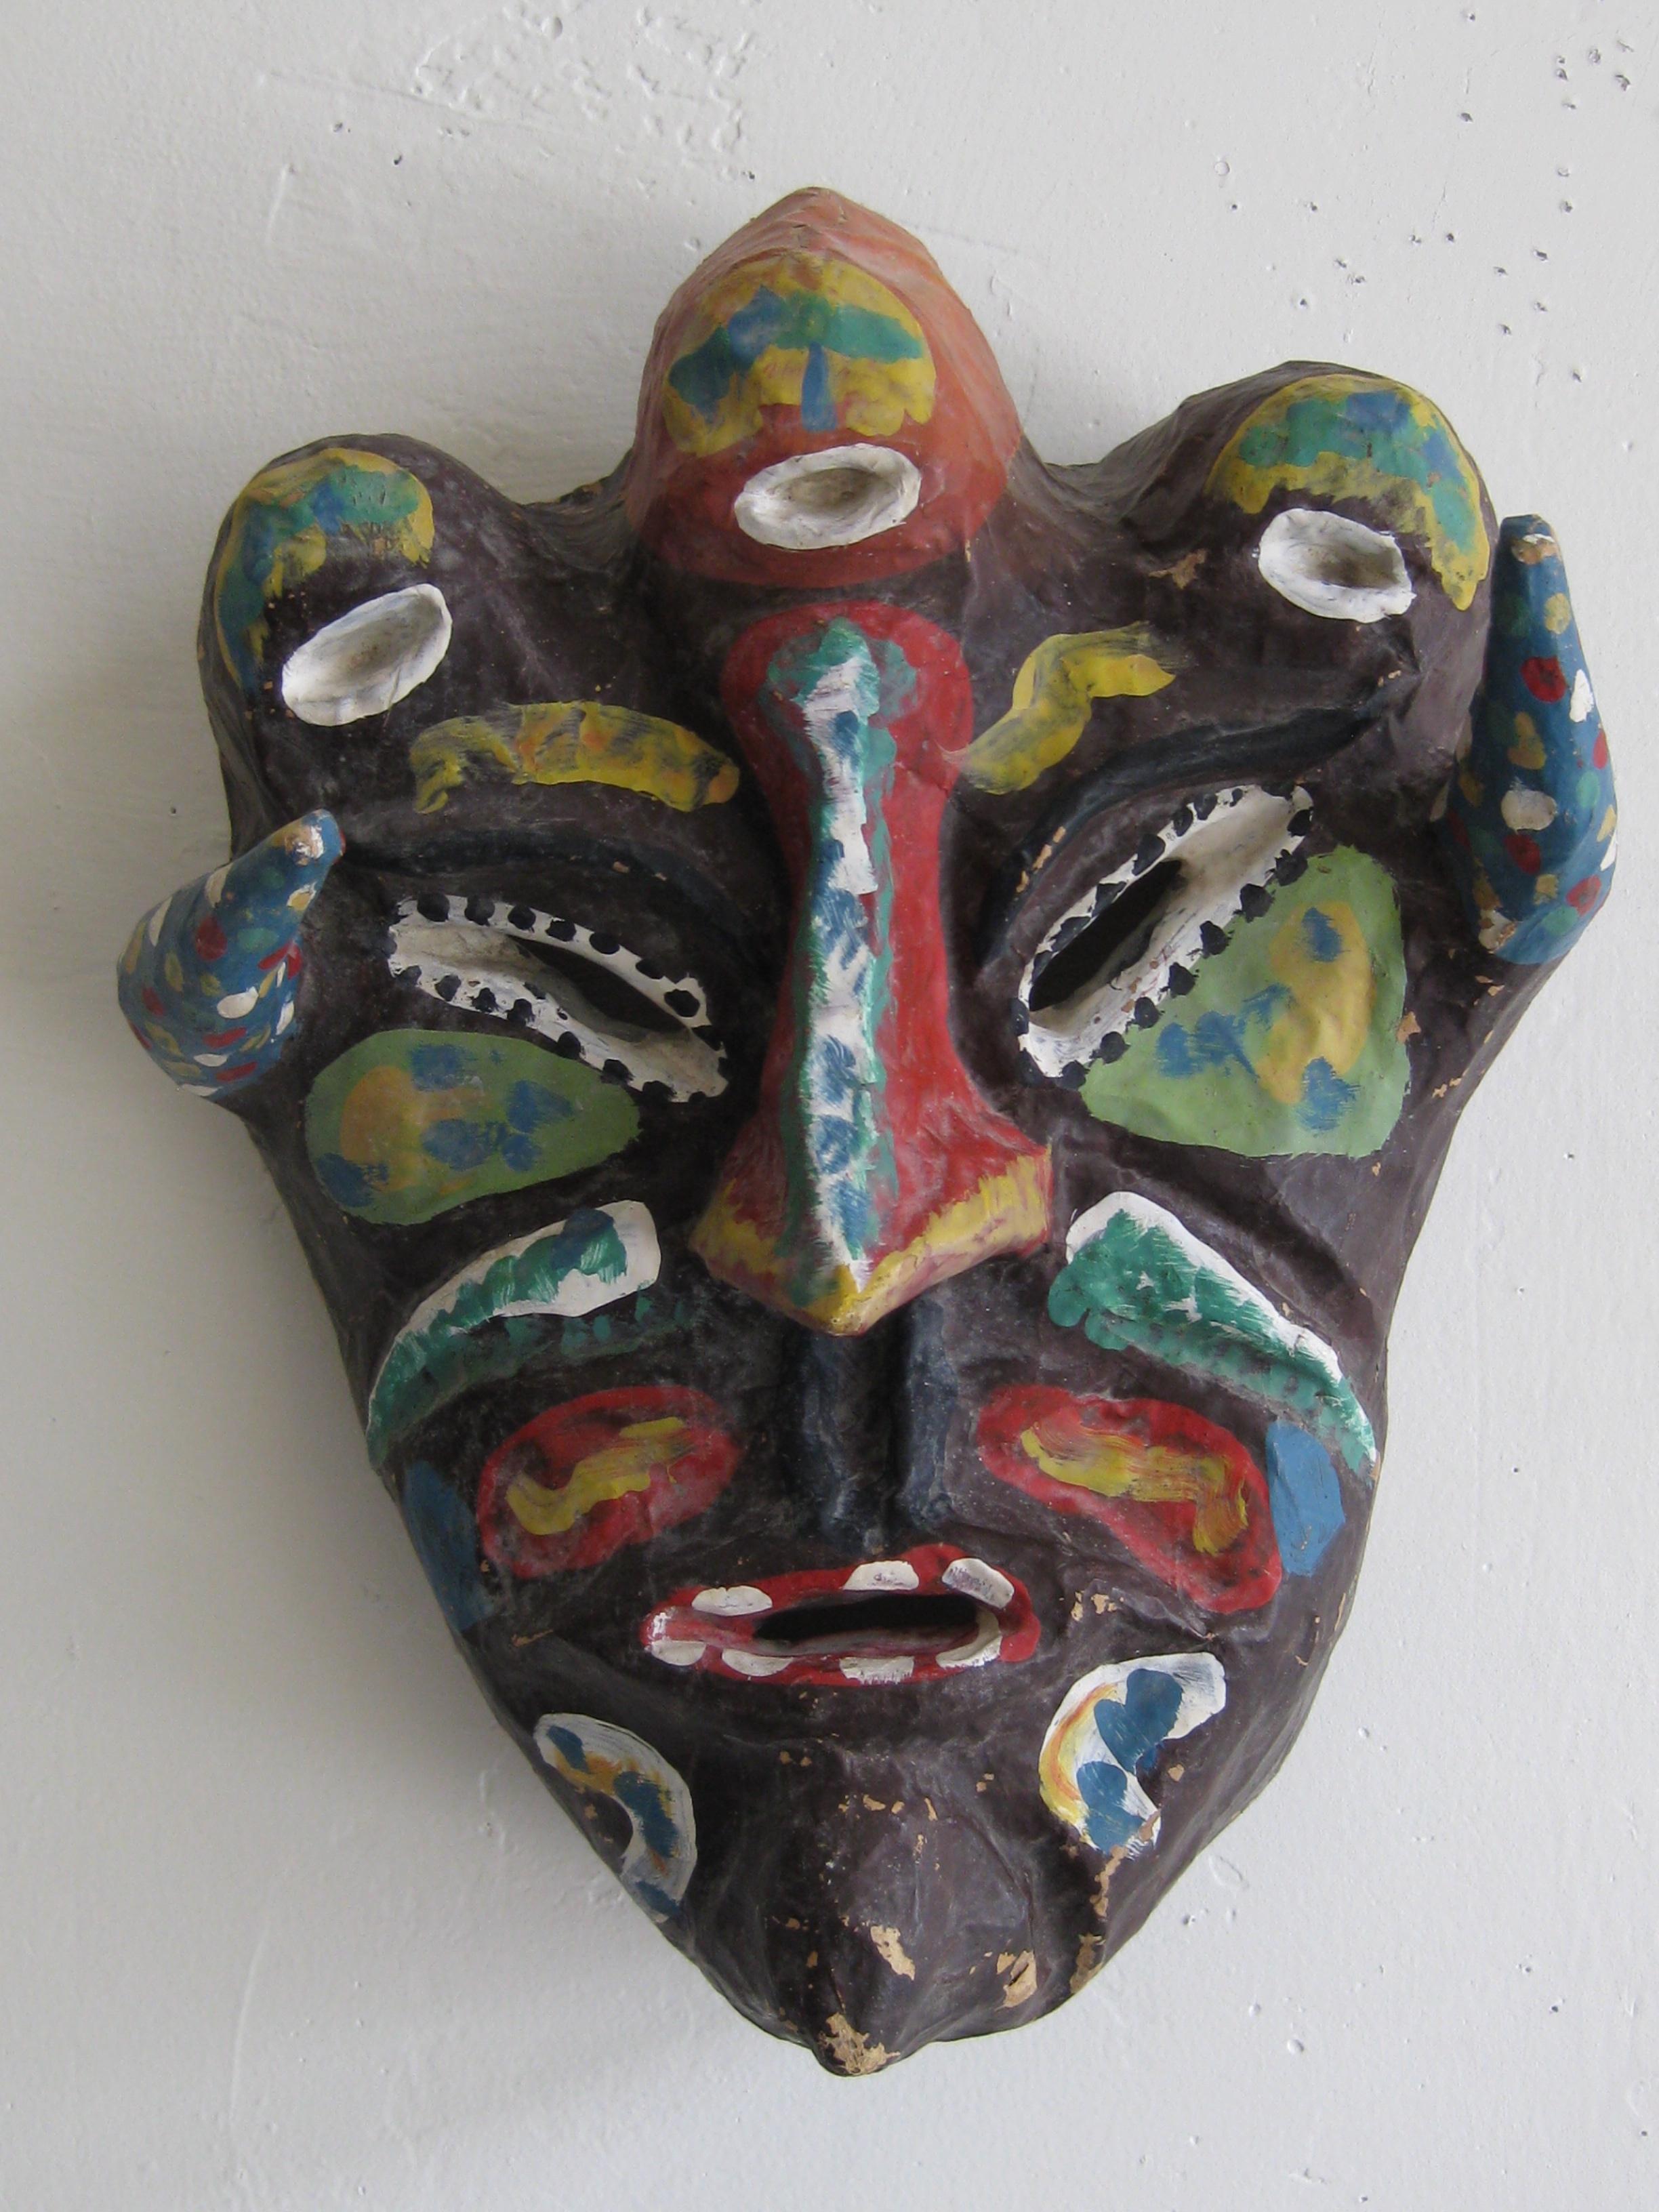 Très unique masque de costume vaudou en papier/papier mâché Folk Art fait à la main pour Mardi Gras/Halloween. Le masque est fait à la main et peint par l'artiste. Signé 